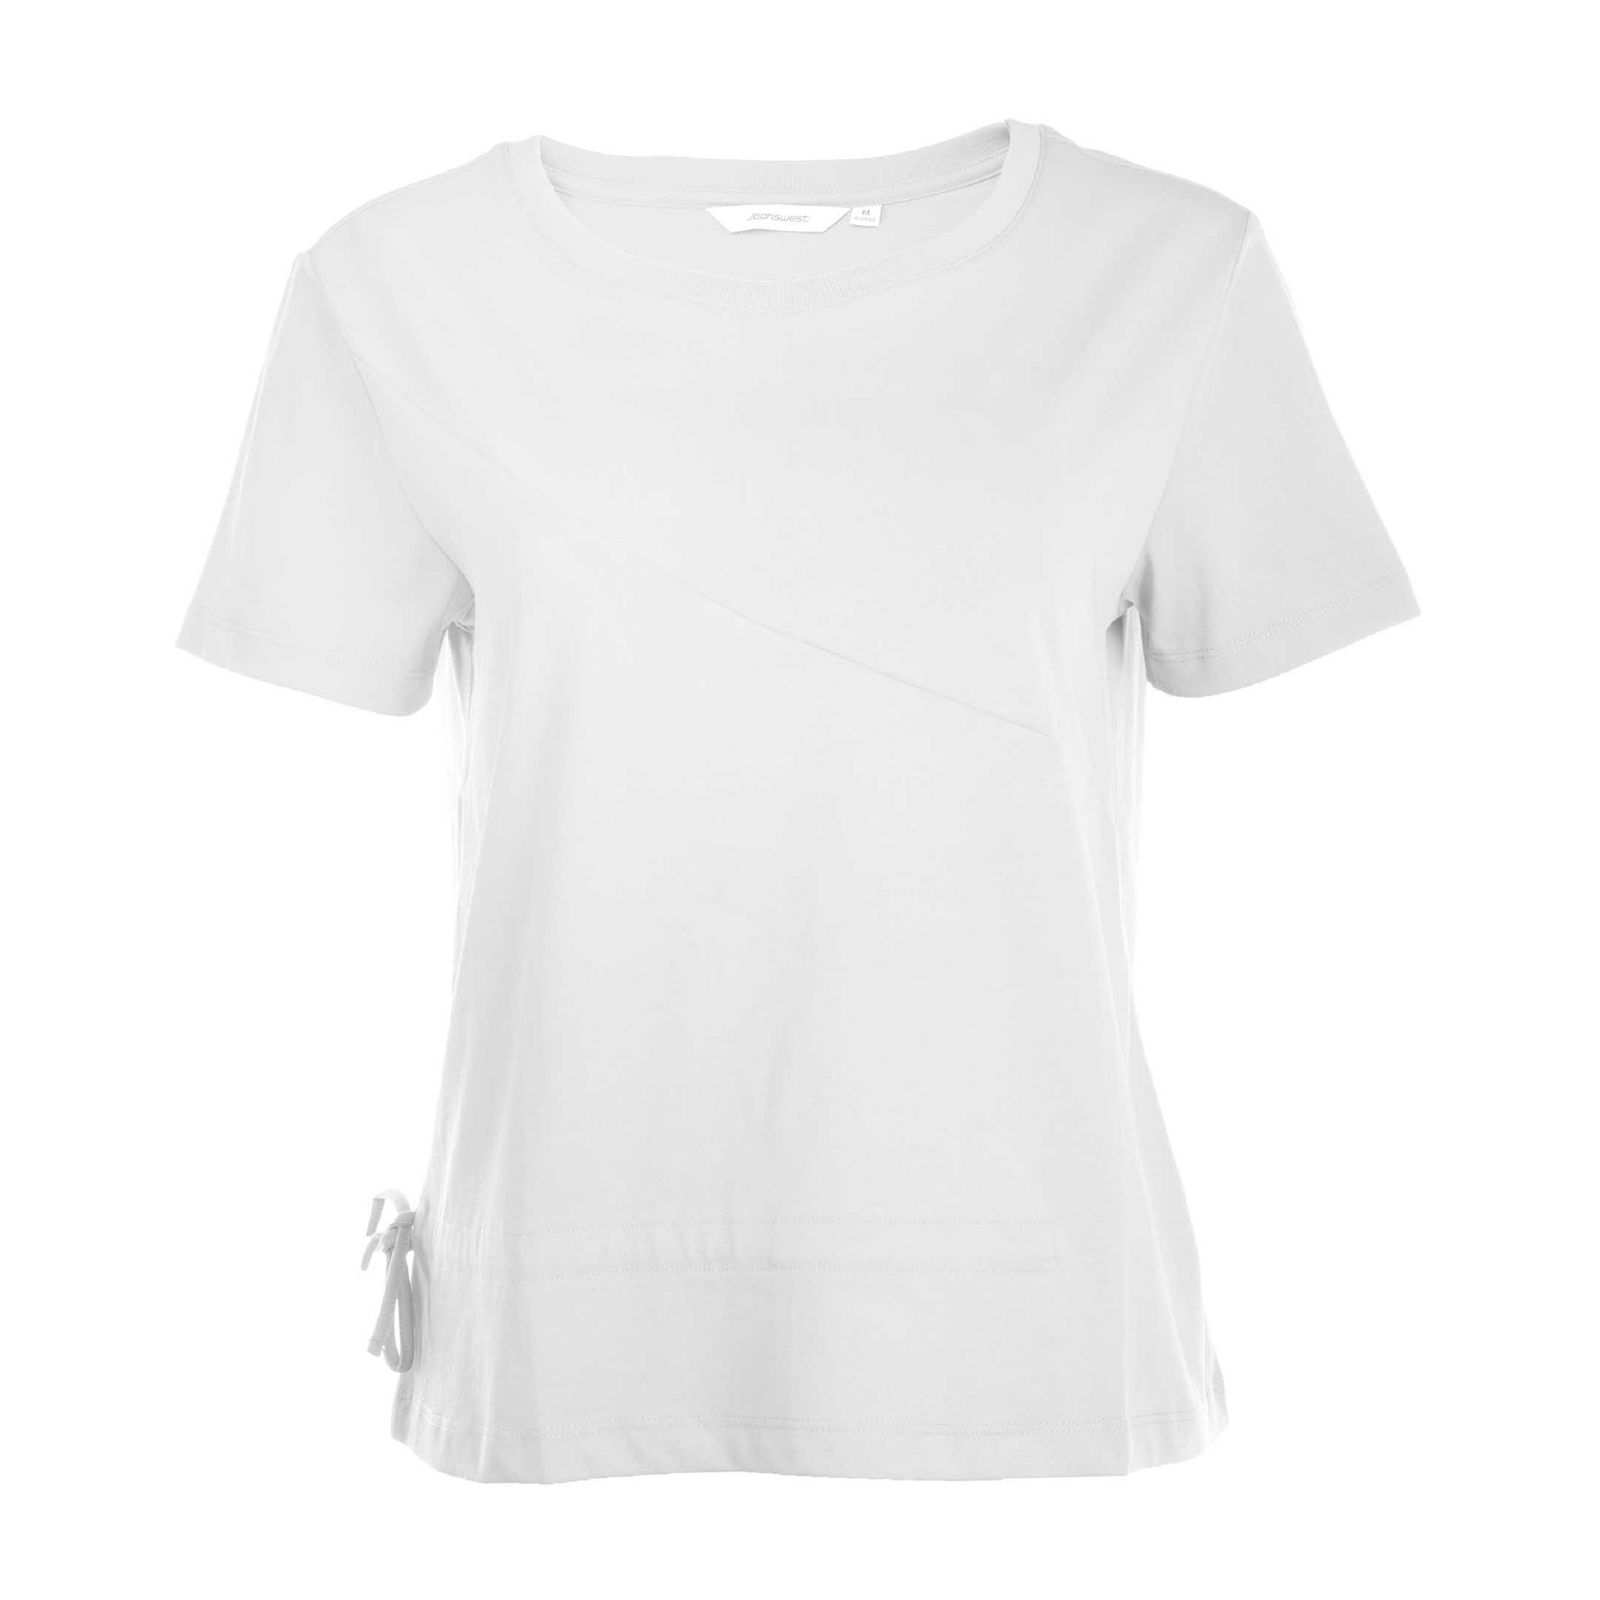 تی شرت آستین کوتاه زنانه جین وست مدل یقه گرد کد 1551351 رنگ سفید -  - 1